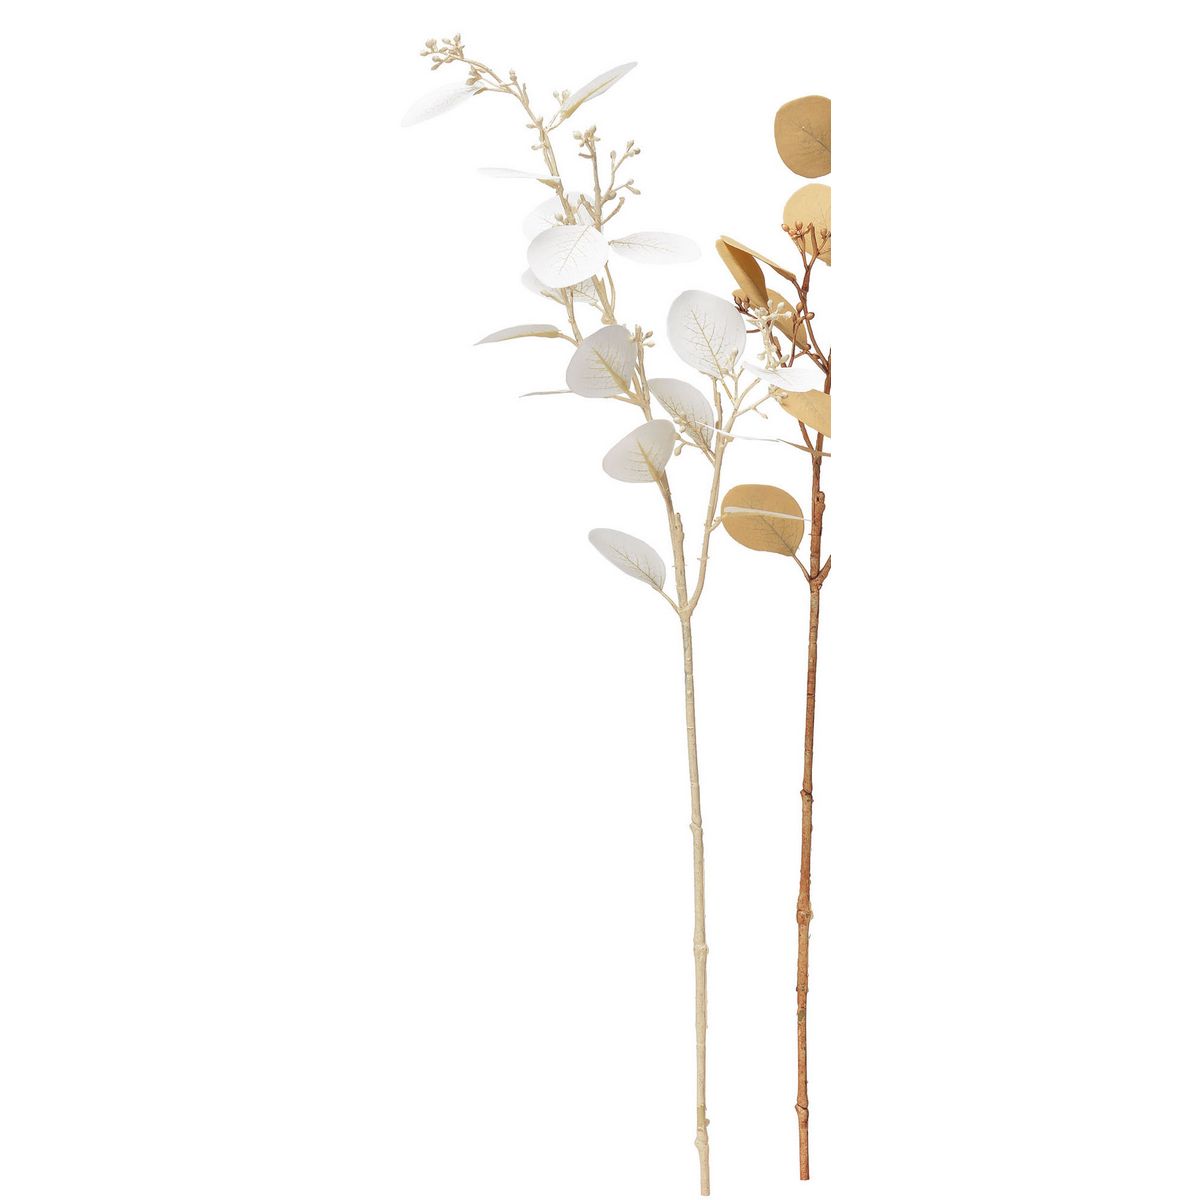 アスカ/ユーカリシードスプレー #001 ホワイト/A-43977-1 造花（アーティフィシャルフラワー） 造花葉物、フェイクグリーン ユーカリ